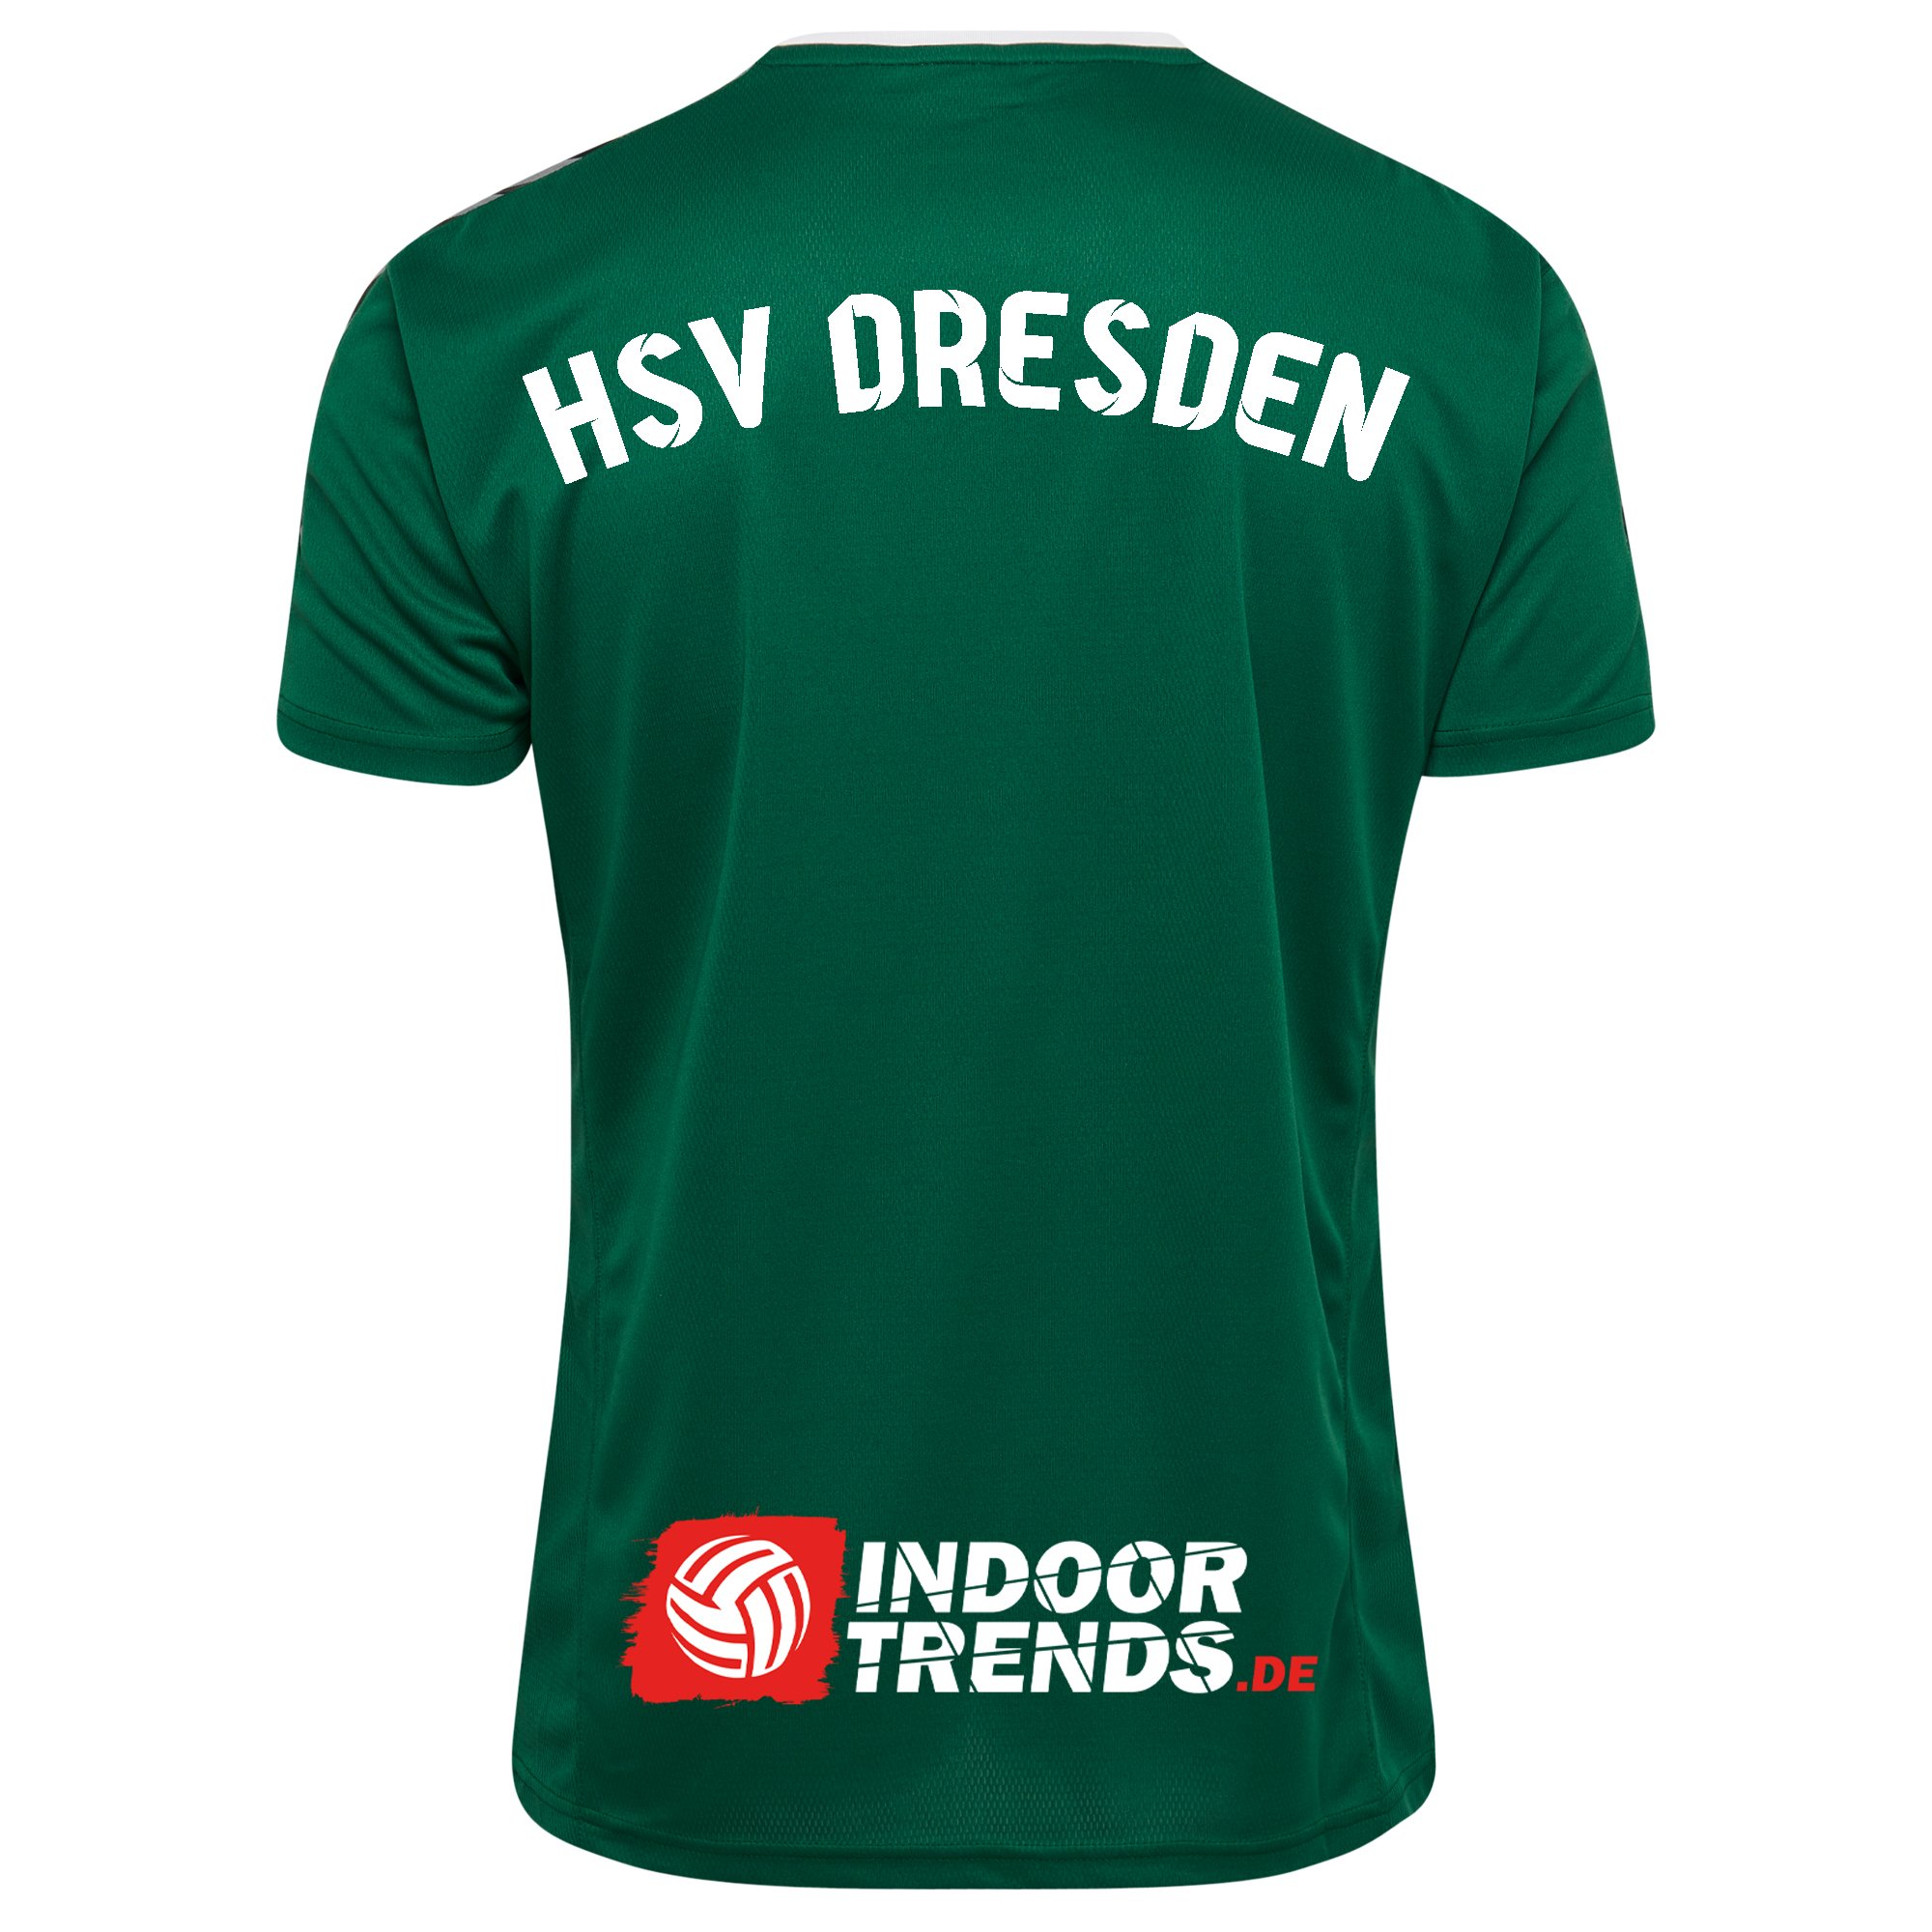 HSV Dresden Trikot